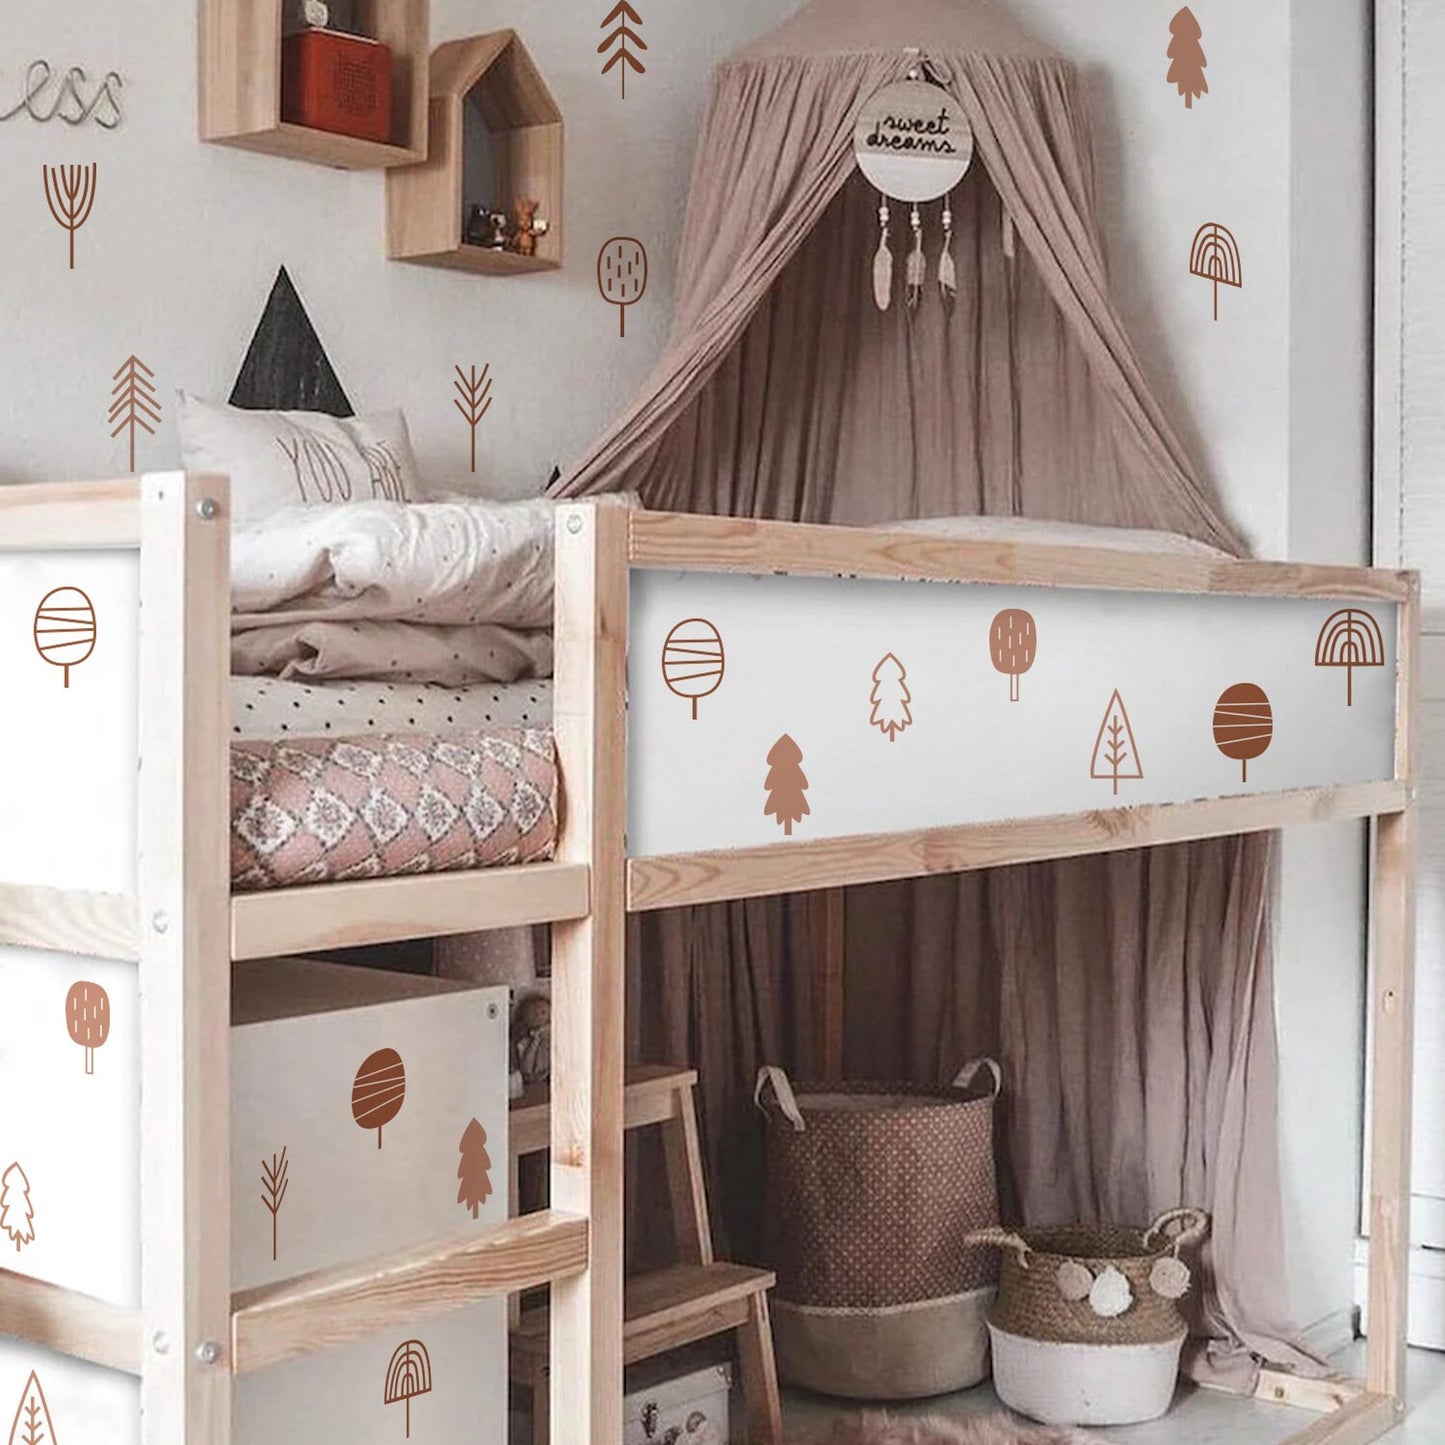 Wandaufkleber für Kinderzimmer Bäume und Tannen im Boho Stil als Sticker Set